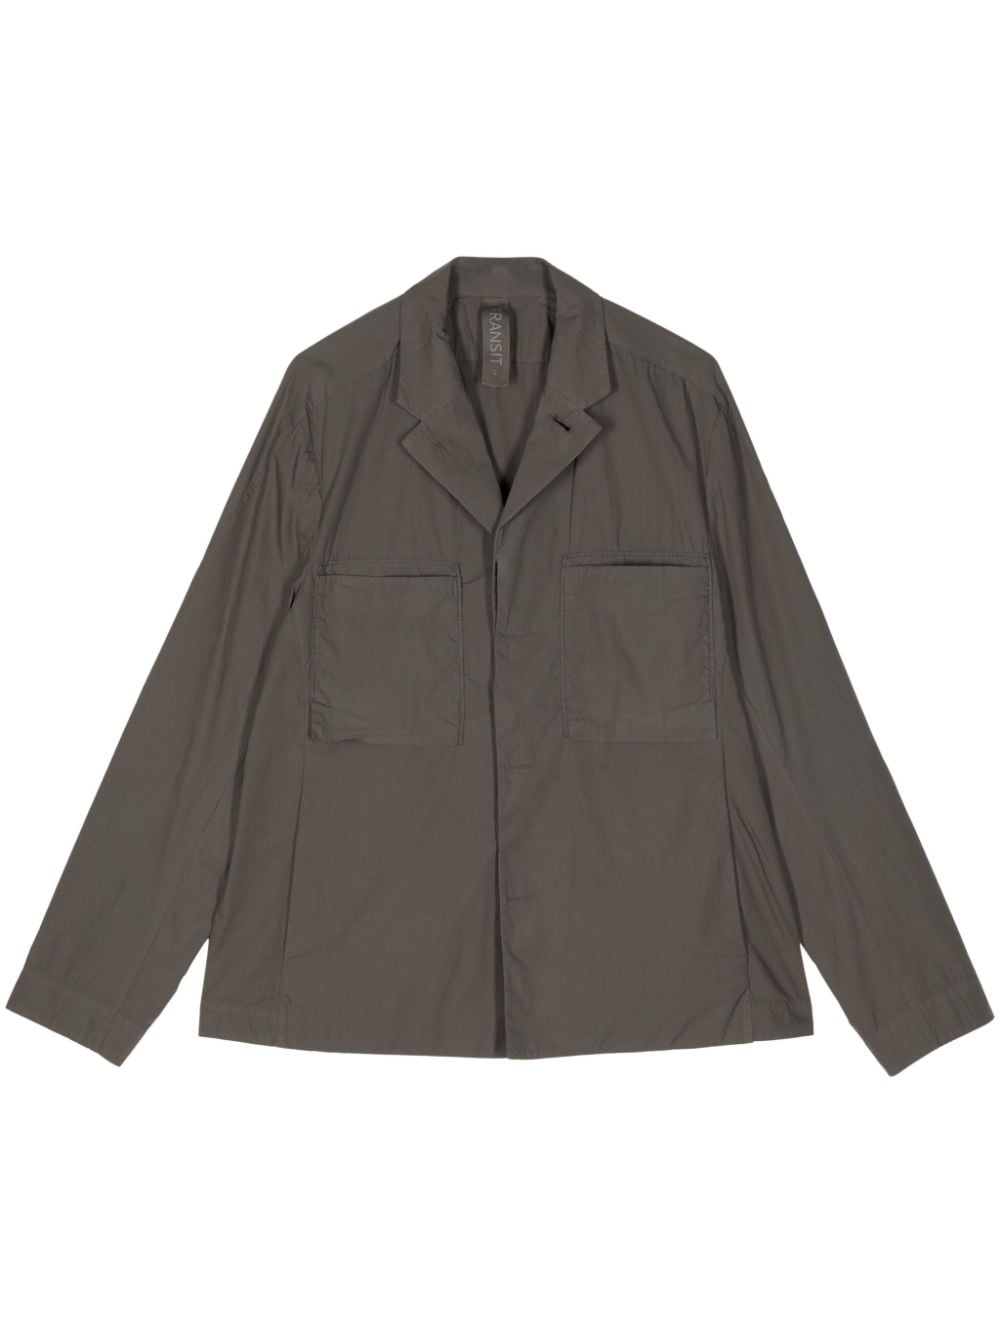 Transit Lightweight Cotton Jacket In Grey